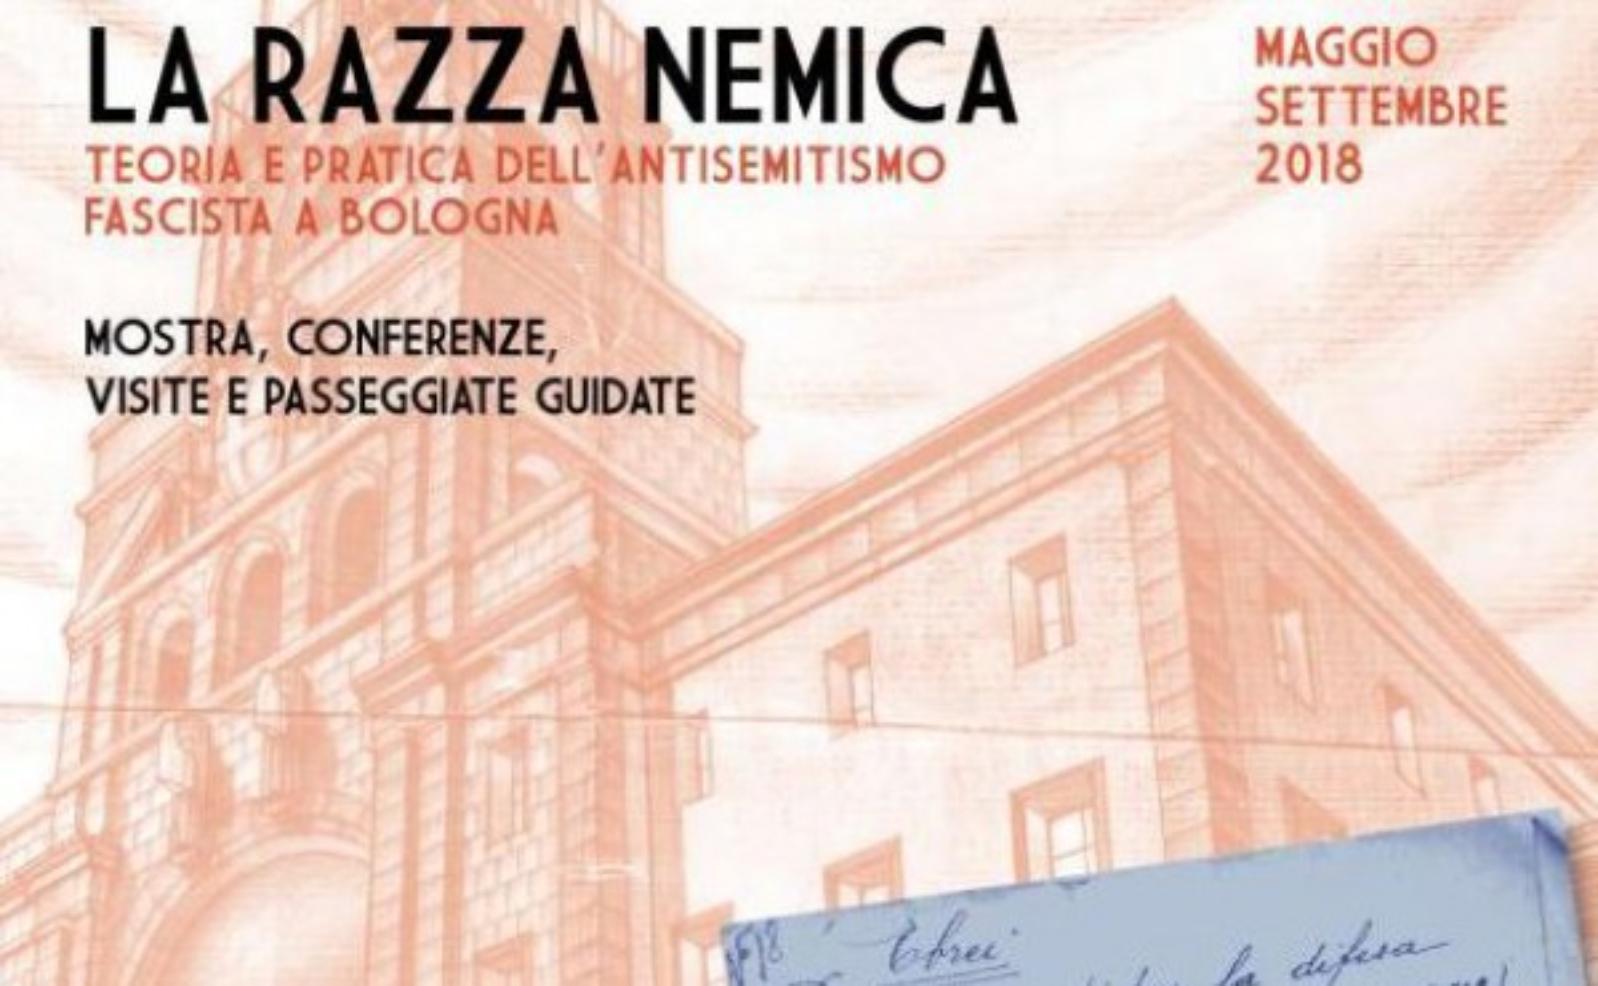 La razza nemica. Teoria e pratica dell’antisemitismo fascista a Bologna